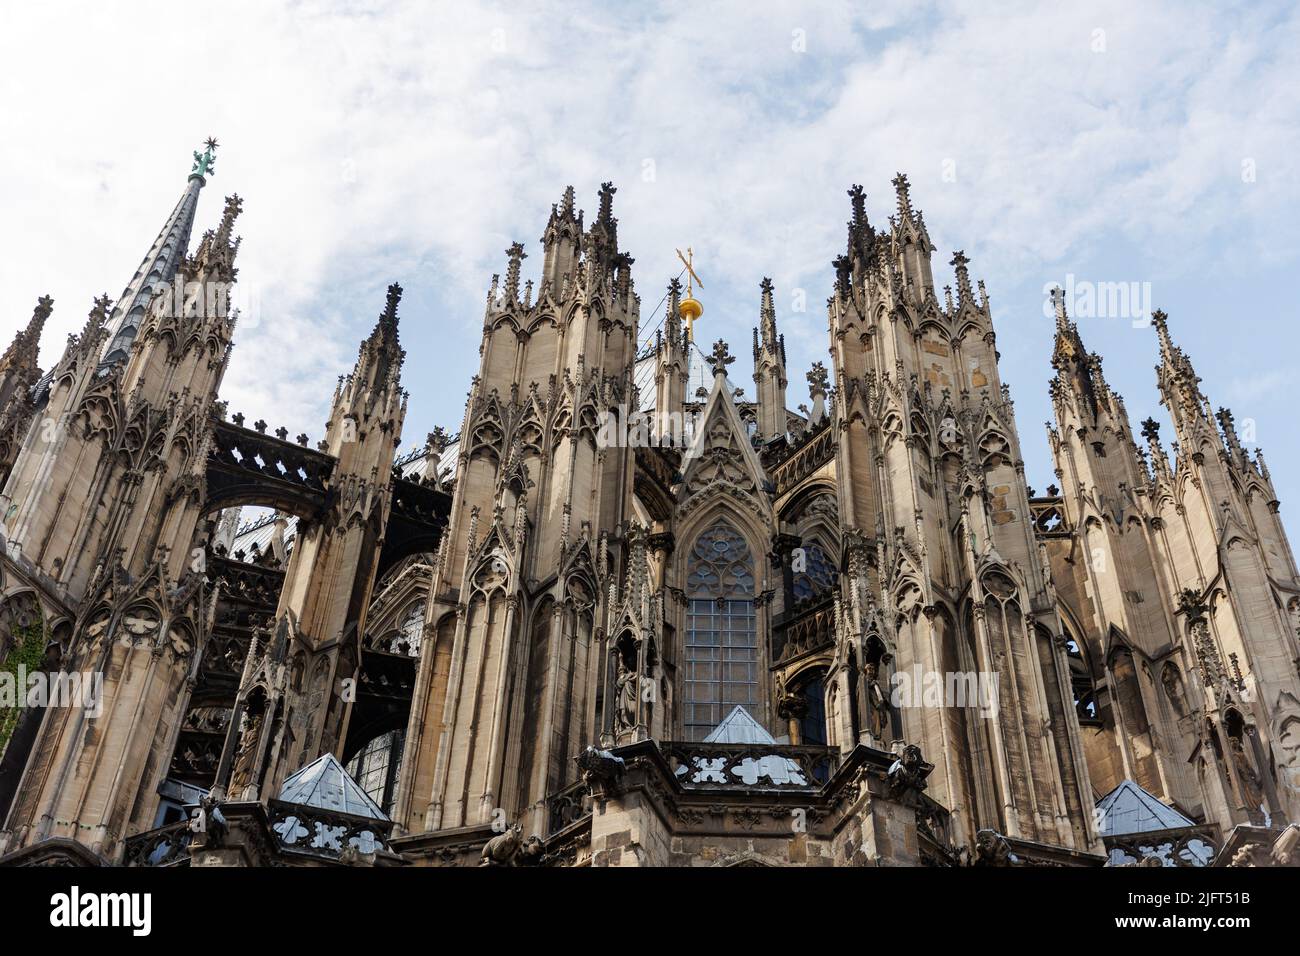 Der Kölner Dom ist ein katholischer Dom in Köln, Nordrhein-Westfalen. Es ist der Sitz des Erzbischofs von Köln. Gotische Architektur Stockfoto